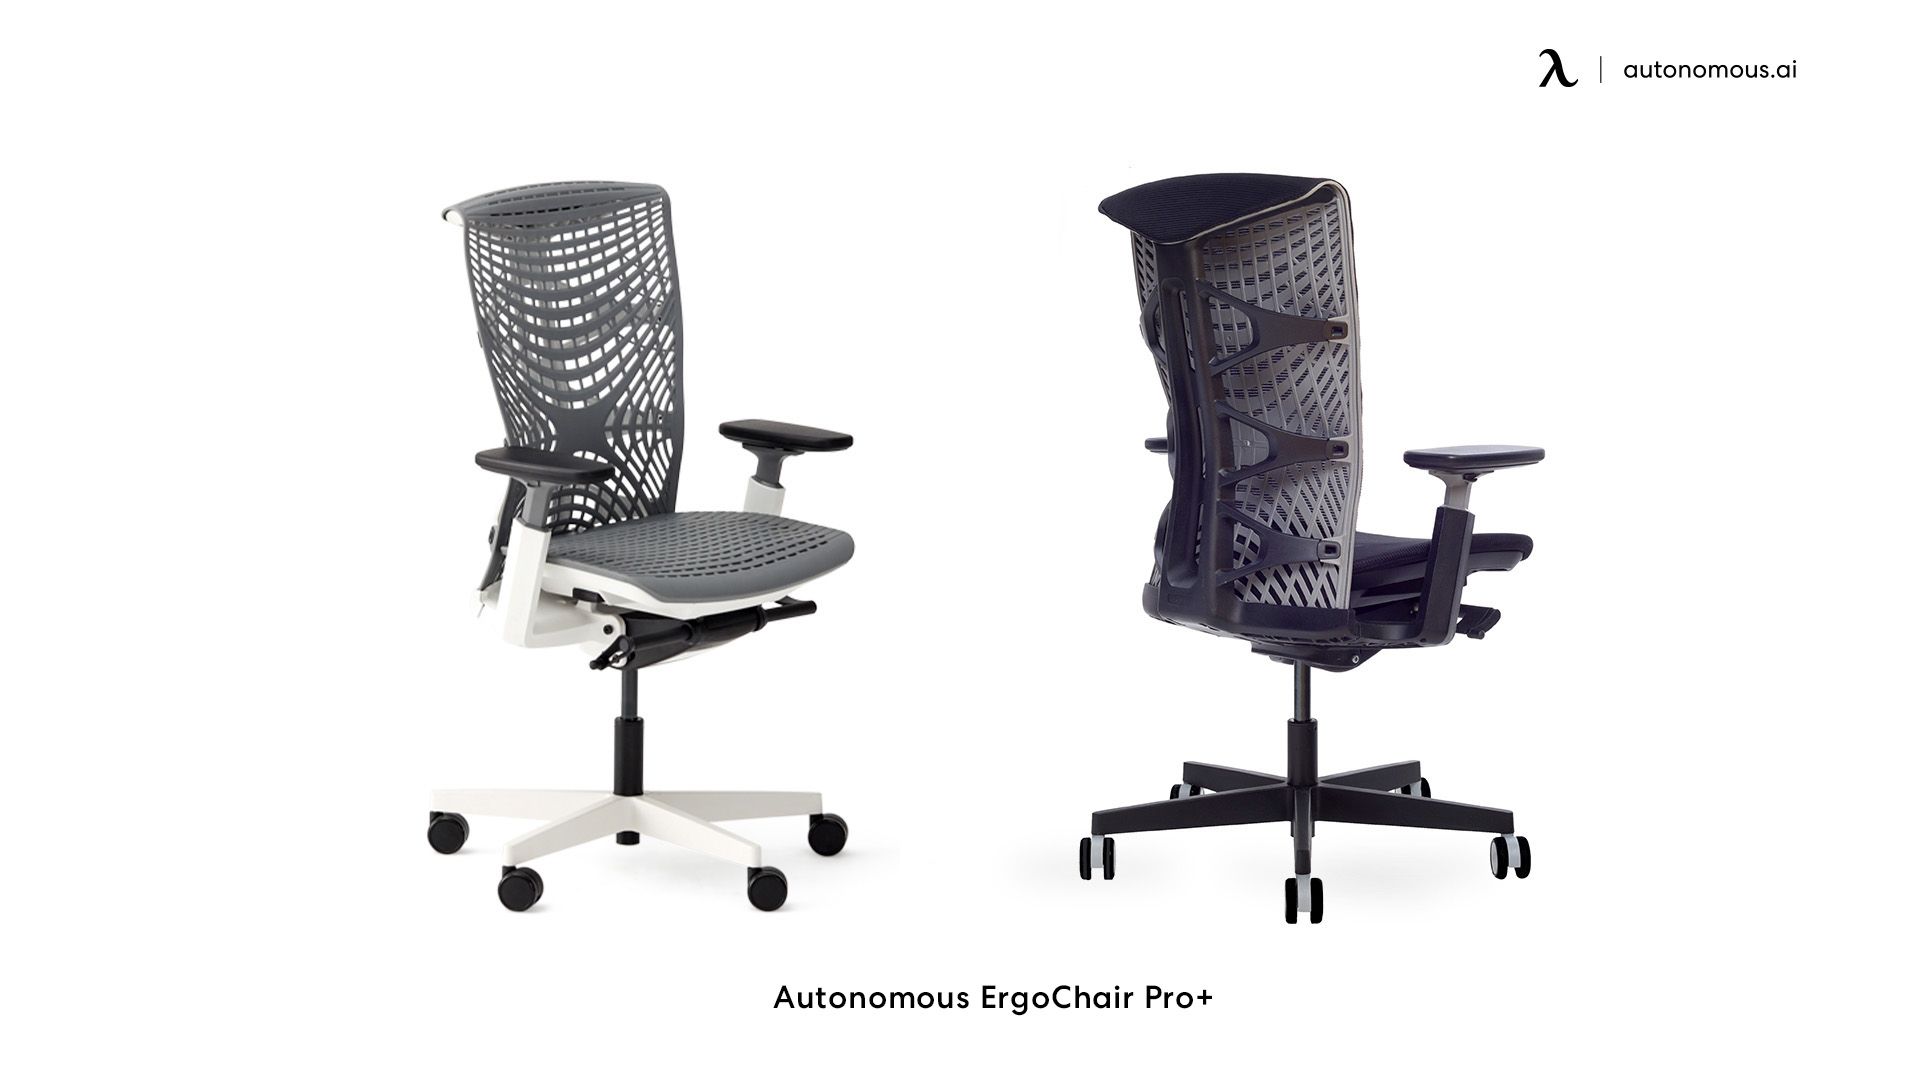 ErgoChair Pro+ comfortable home office chair